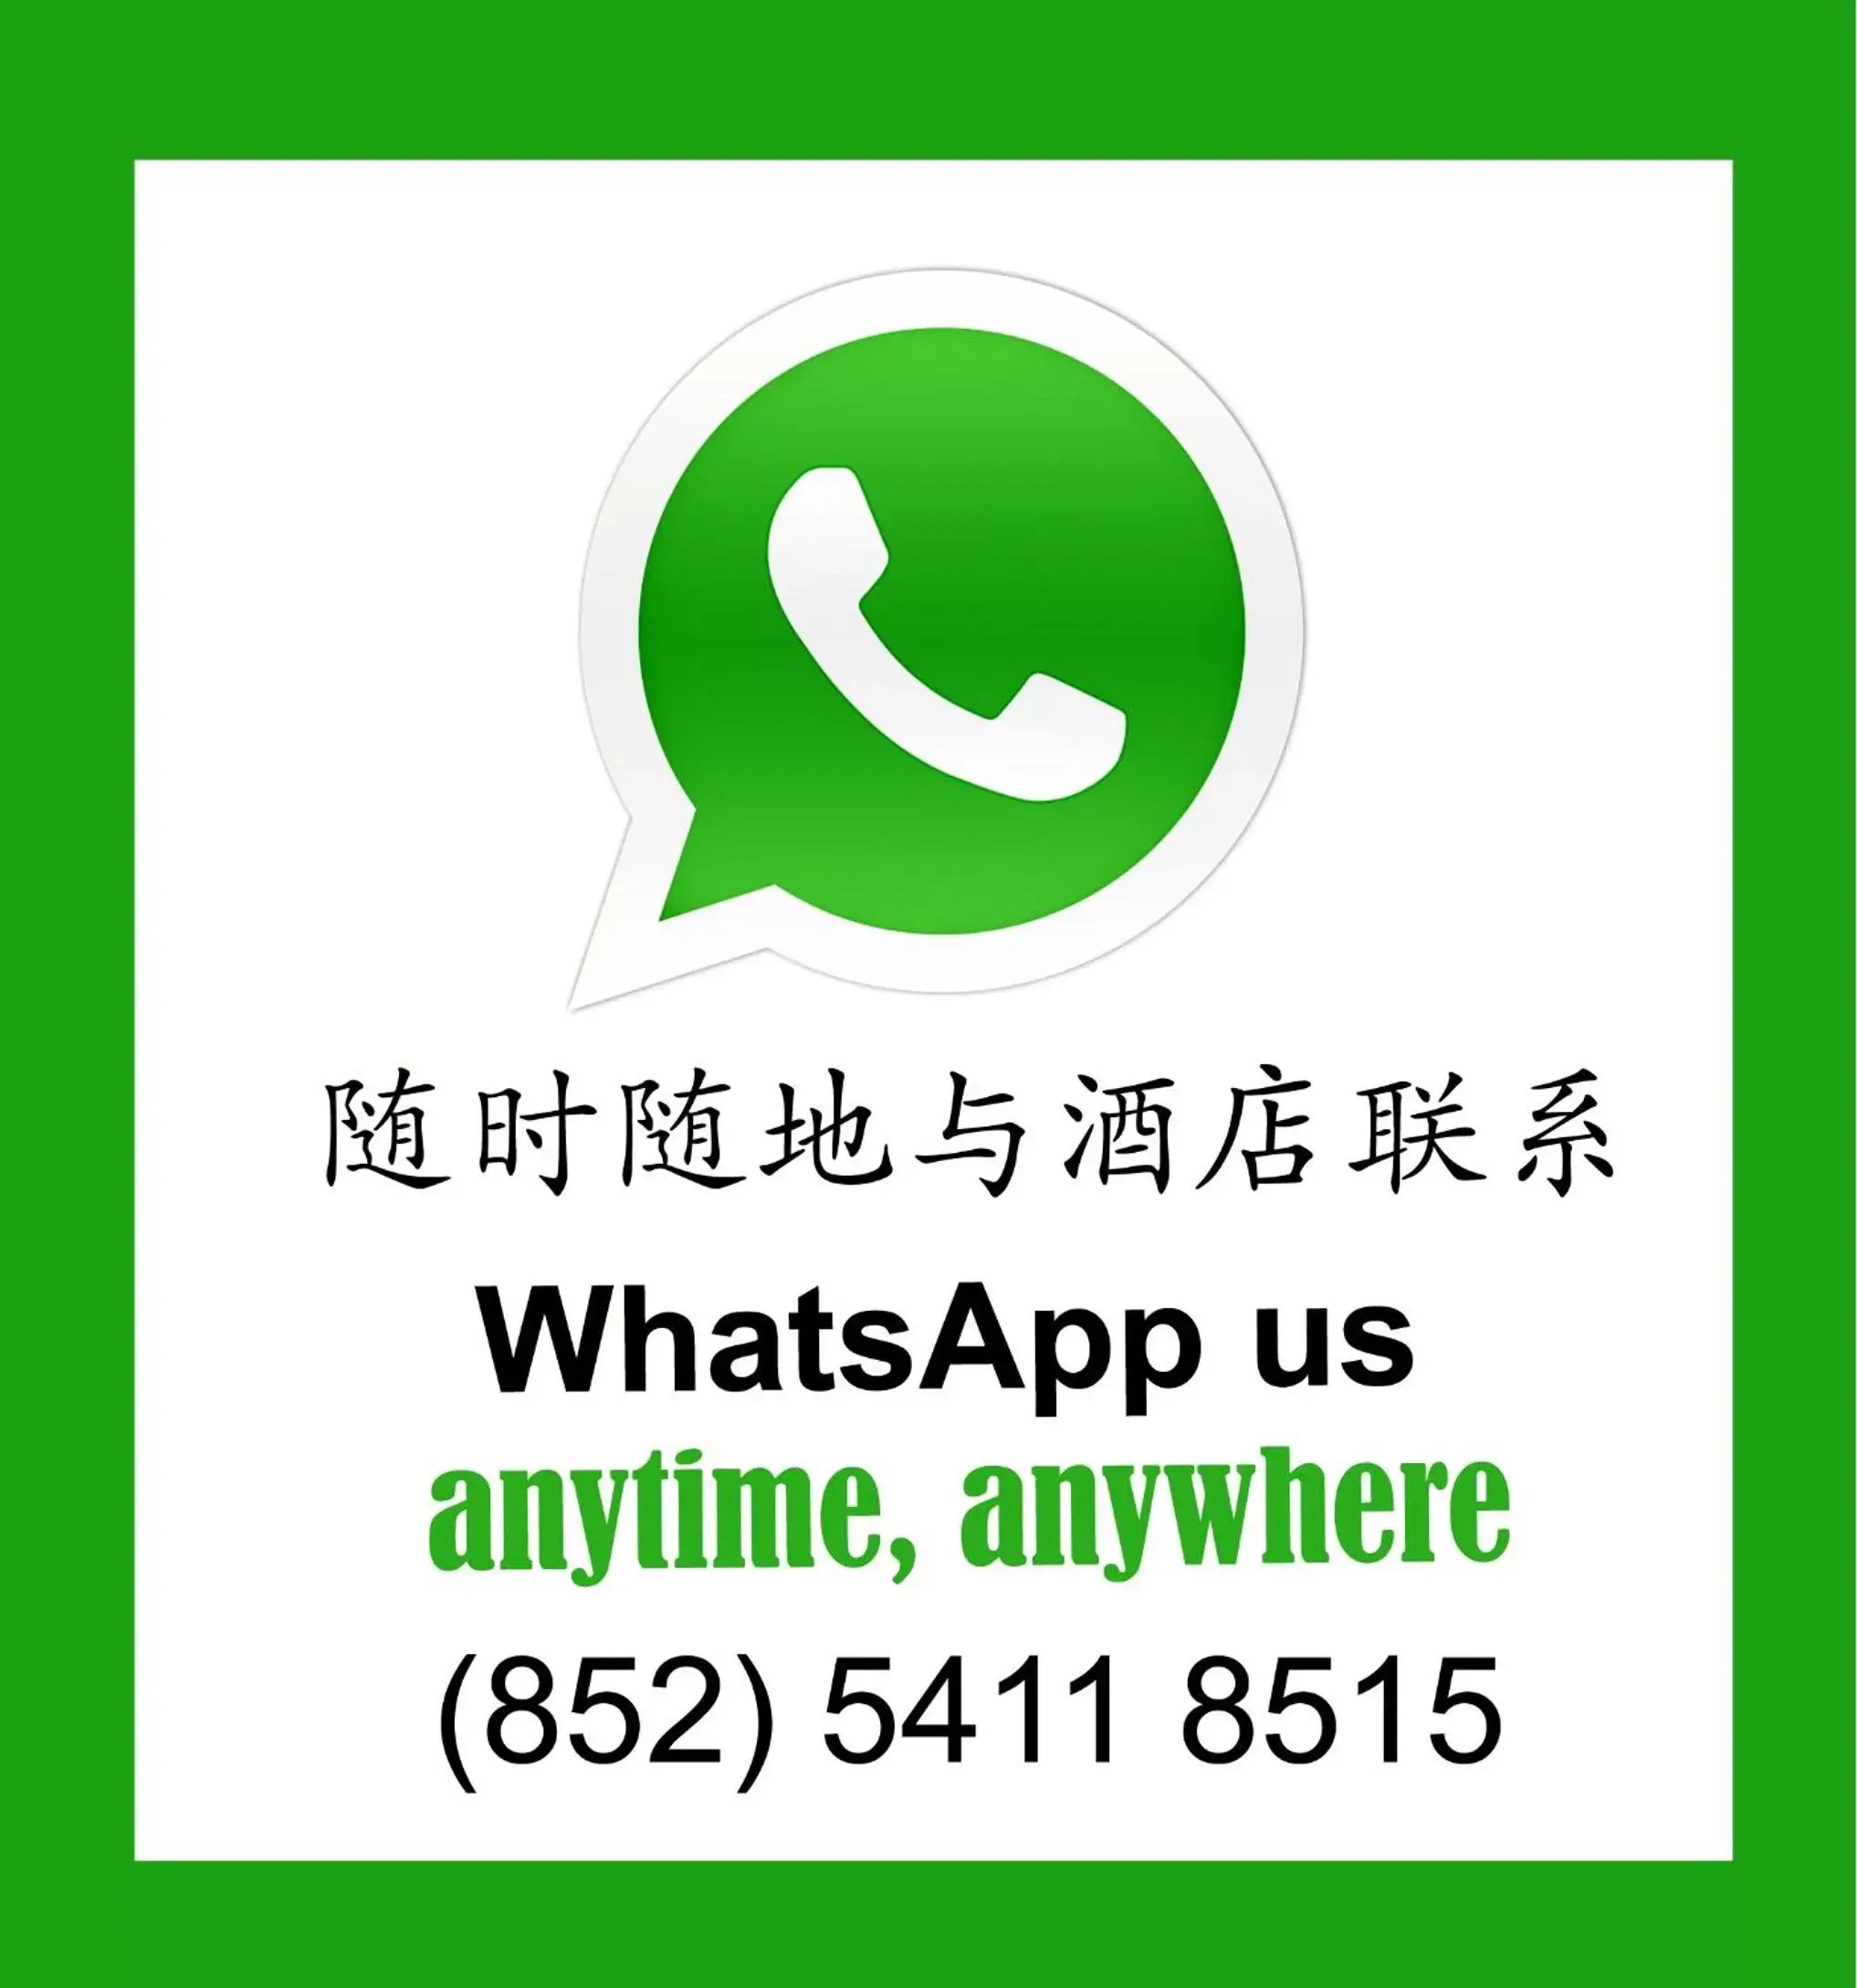 Text overlay in Lan Kwai Fong Hotel - Kau U Fong